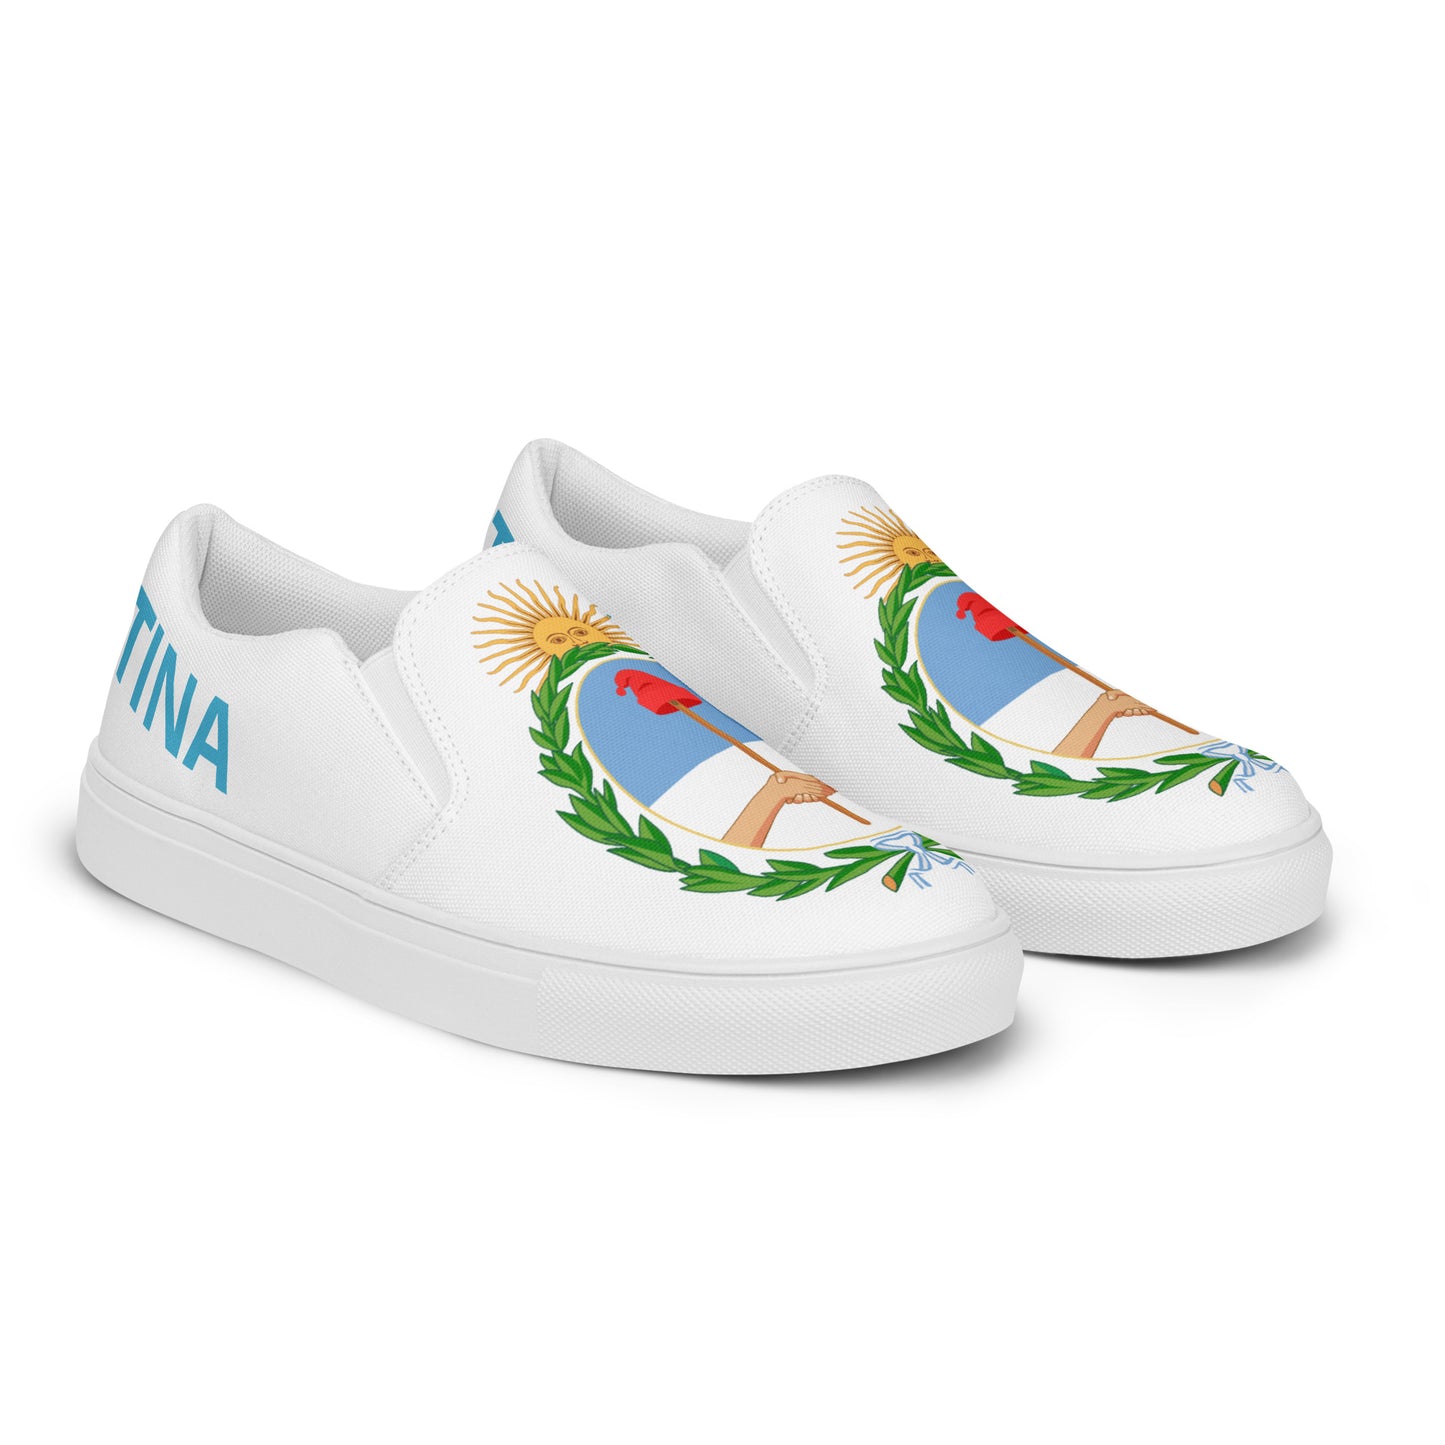 Argentina - Men - White - Slip-on shoes